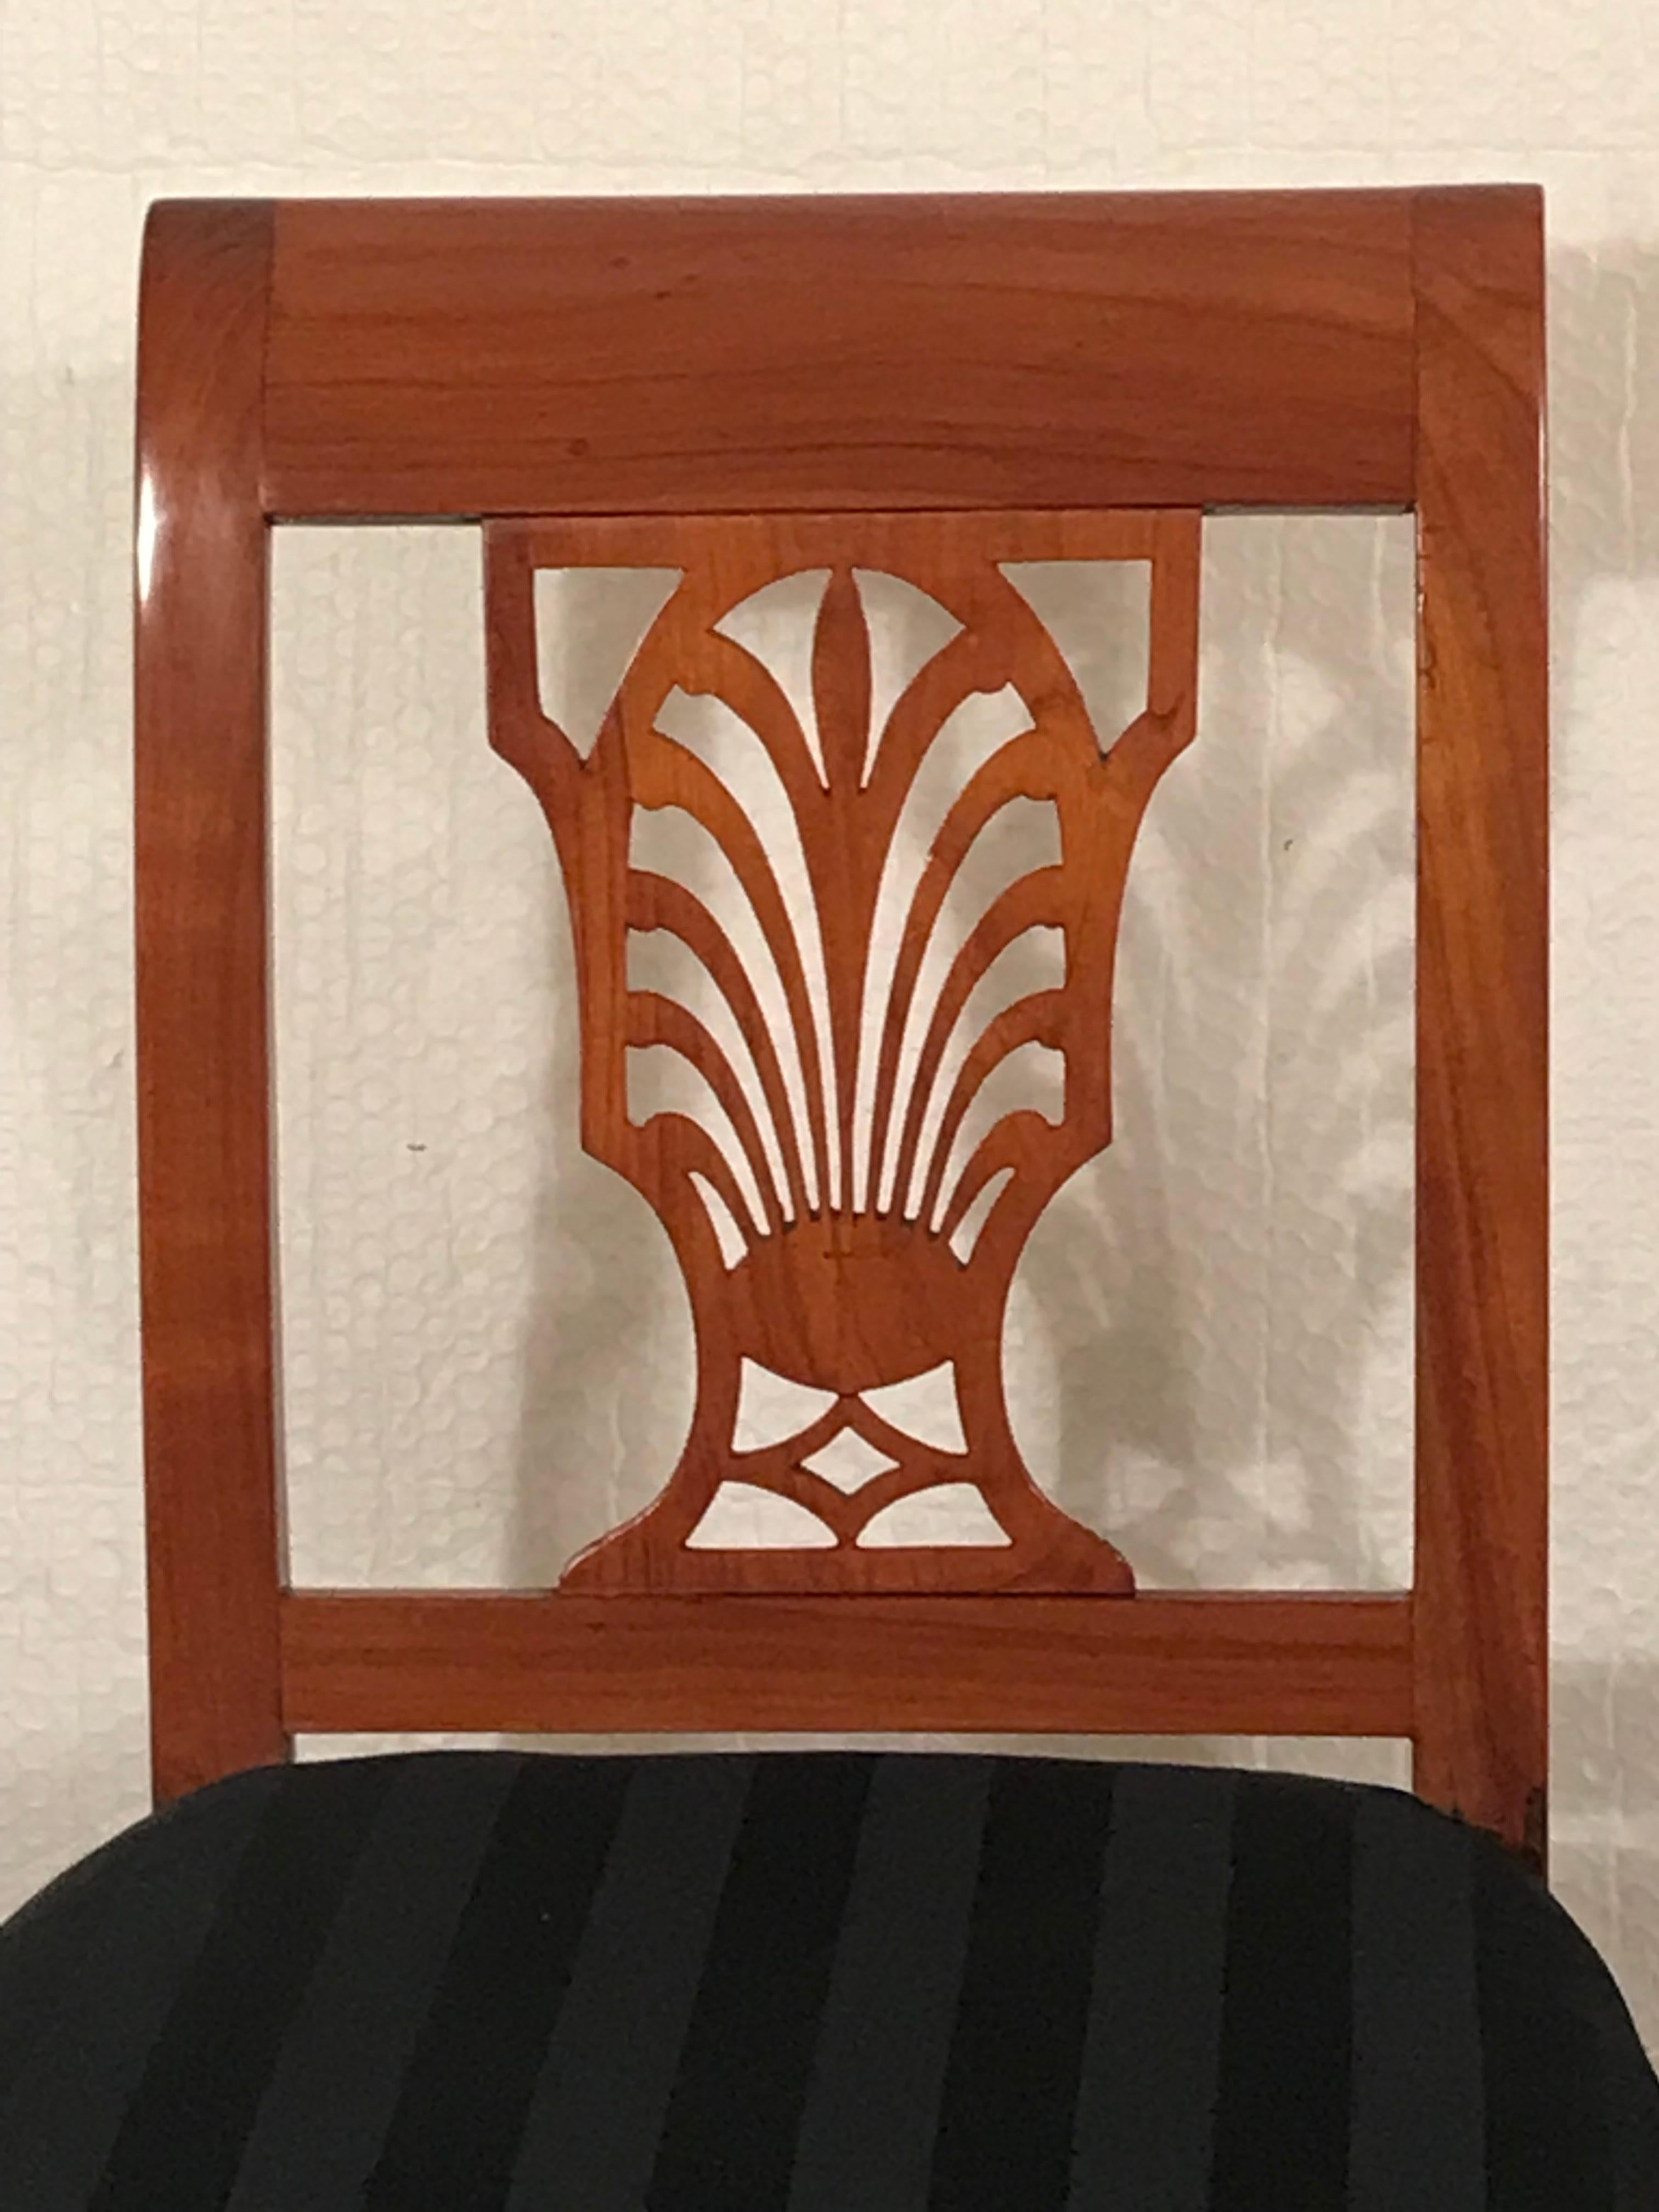 Klassizistisches Stuhlpaar, Deutschland 1810-20: Exquisites Design mit Palmettenmotiv

Entdecken Sie die Eleganz der Vergangenheit mit diesem atemberaubenden Paar klassizistischer Stühle aus Deutschland, die zwischen 1810 und 1820 hergestellt